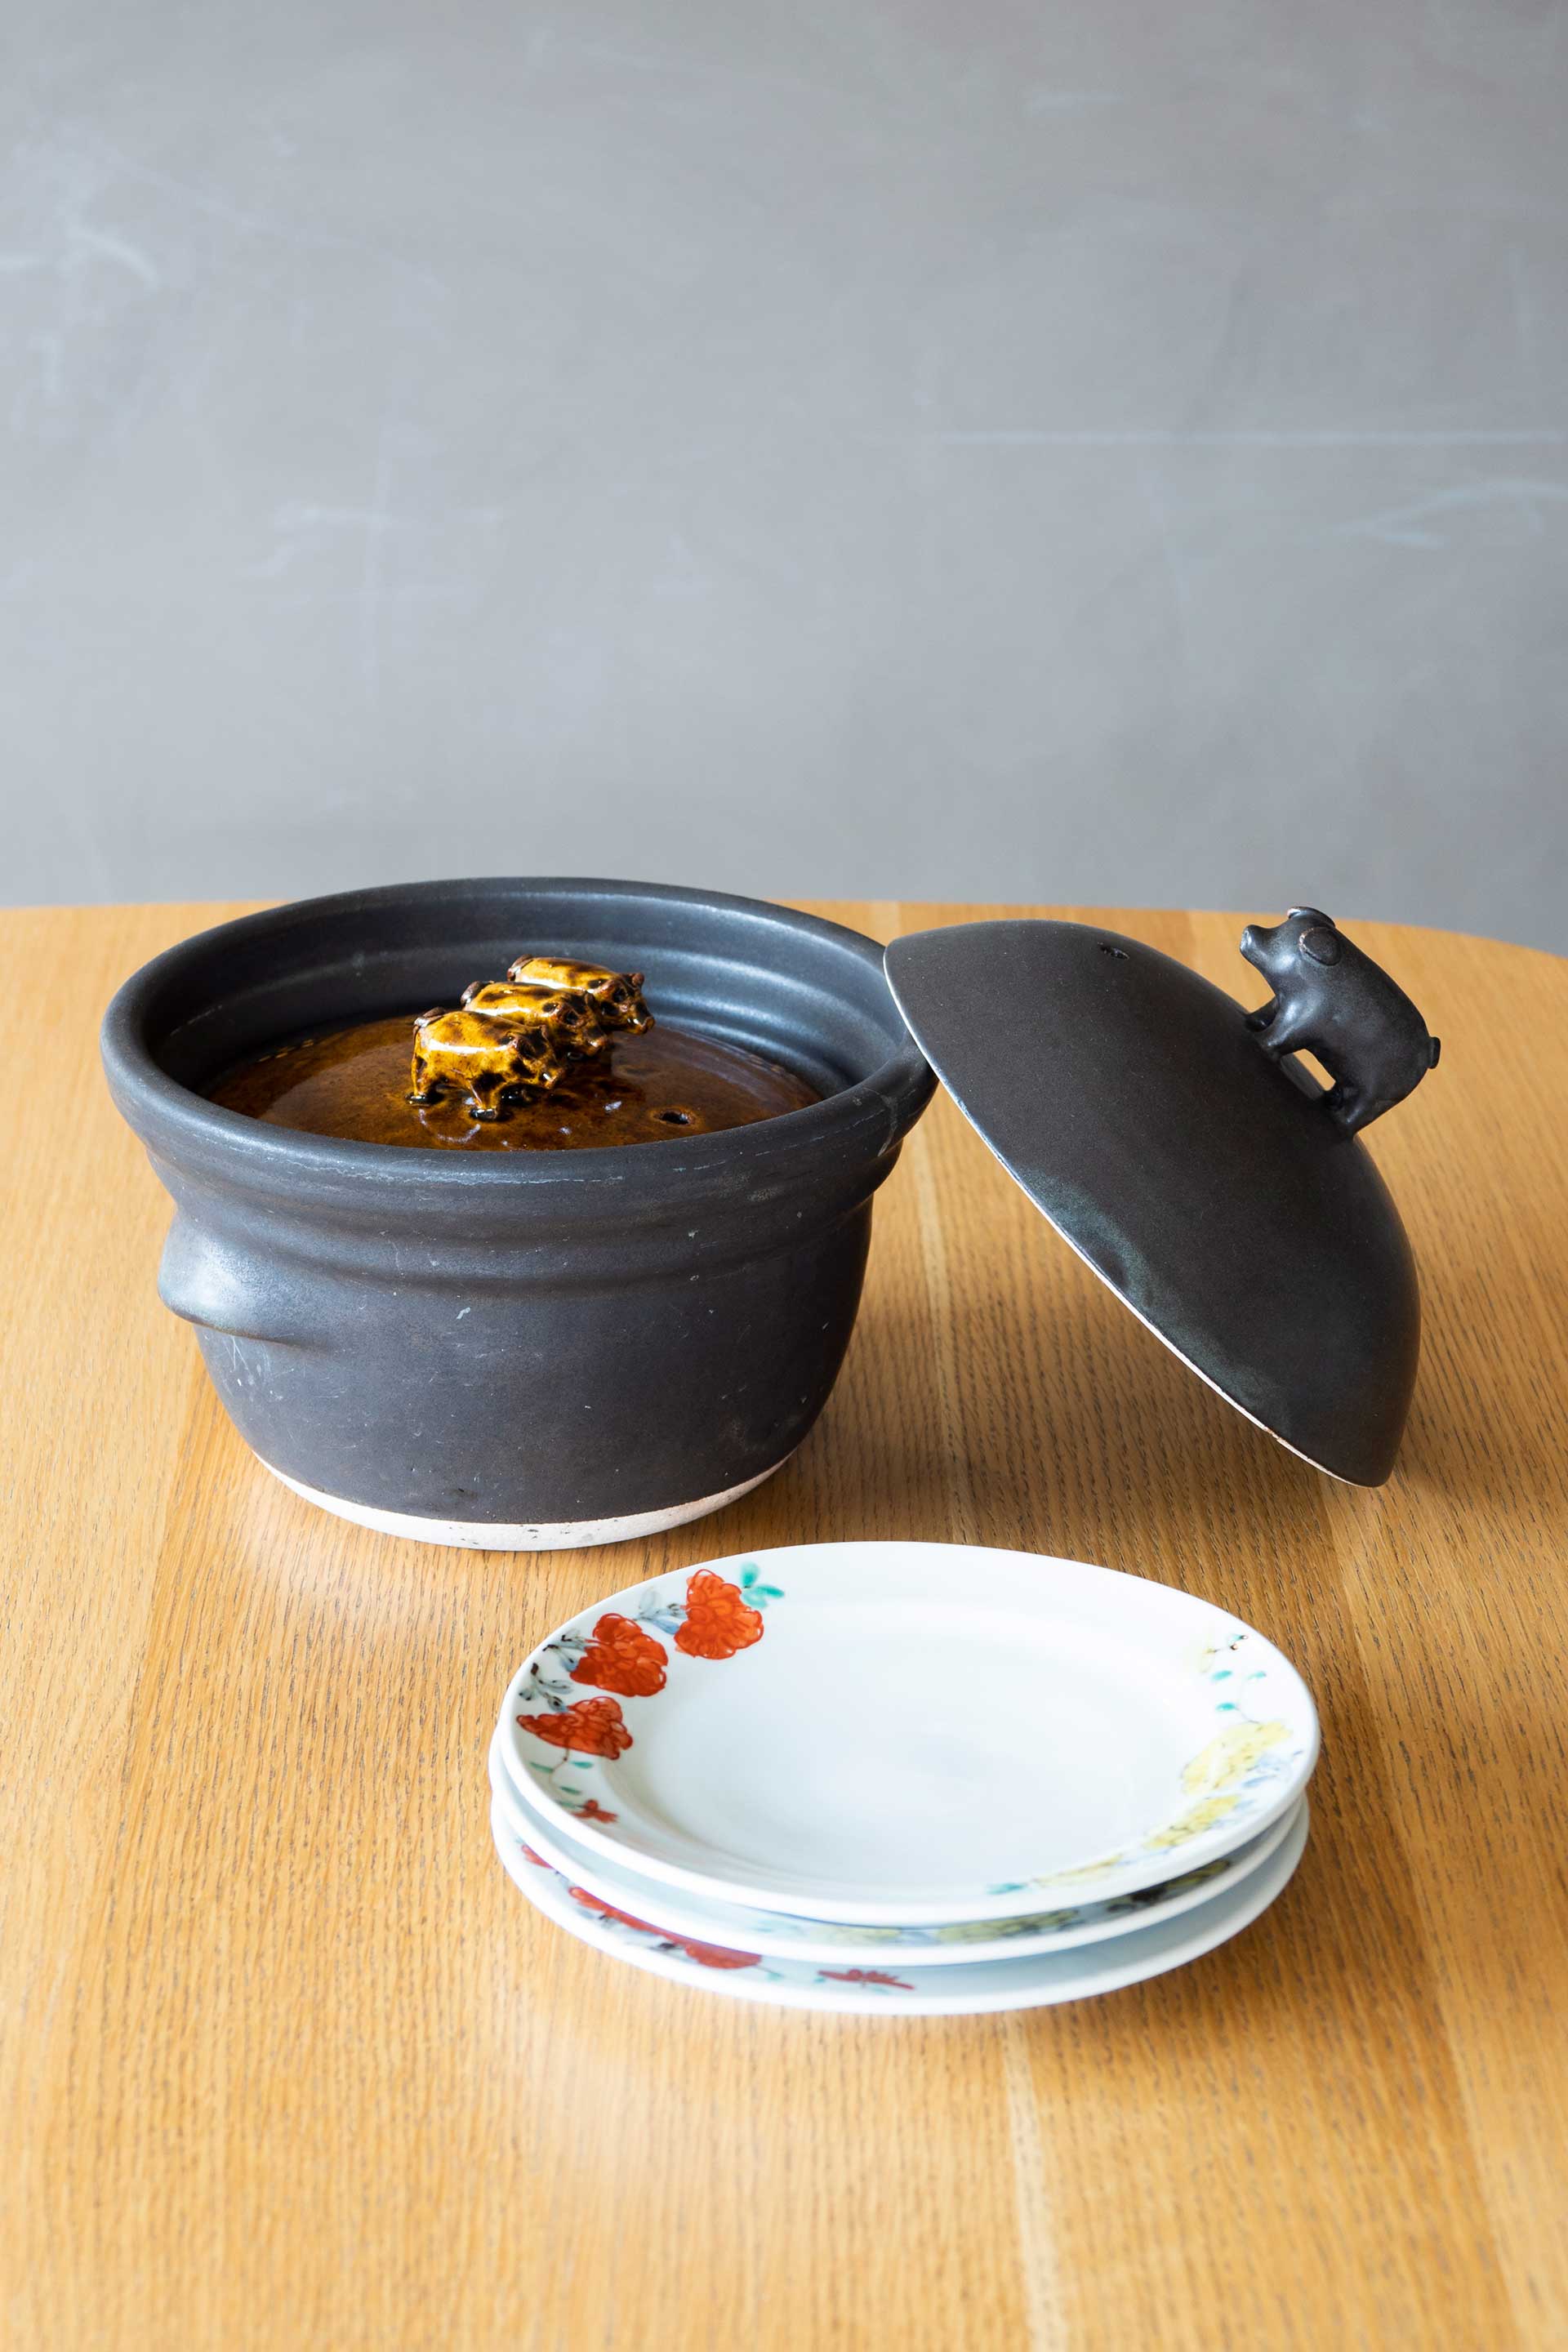 食器は美濃焼を中心に揃えている。ご飯やおかゆがおいしく炊ける土鍋は、岐阜県土岐市の「ま工房」。絵付けが美しい手前のお皿は、石川県「九谷青窯」のもの。